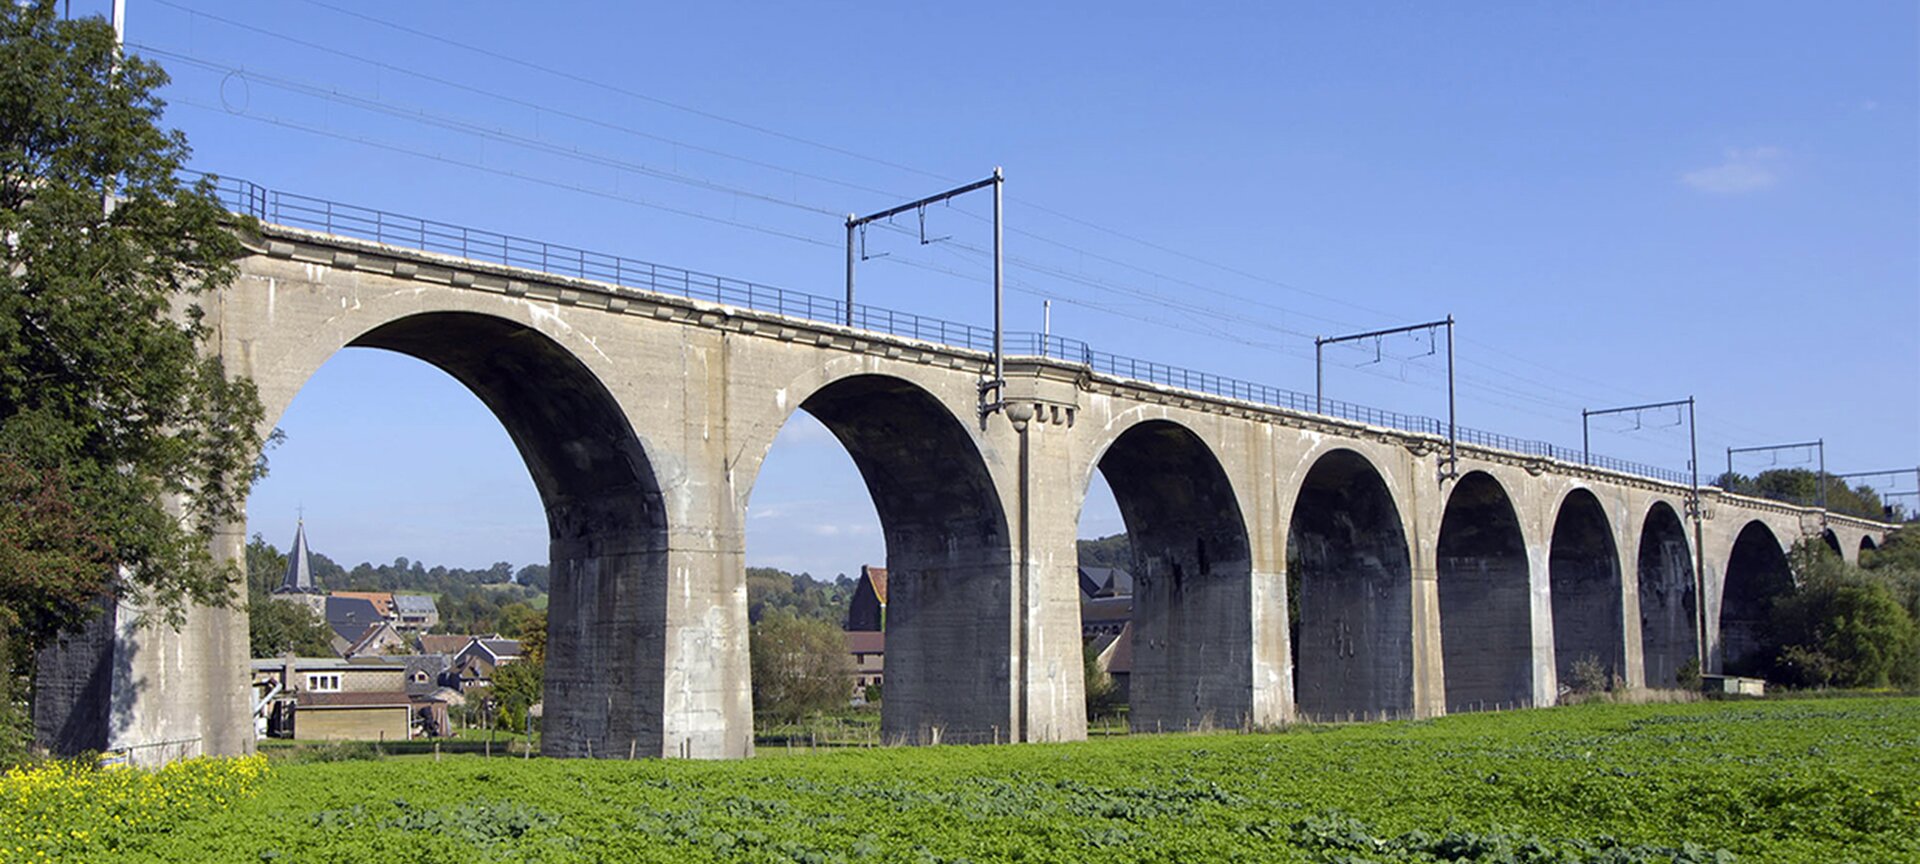 Spoorwegviaduct - spoorwegviaduct